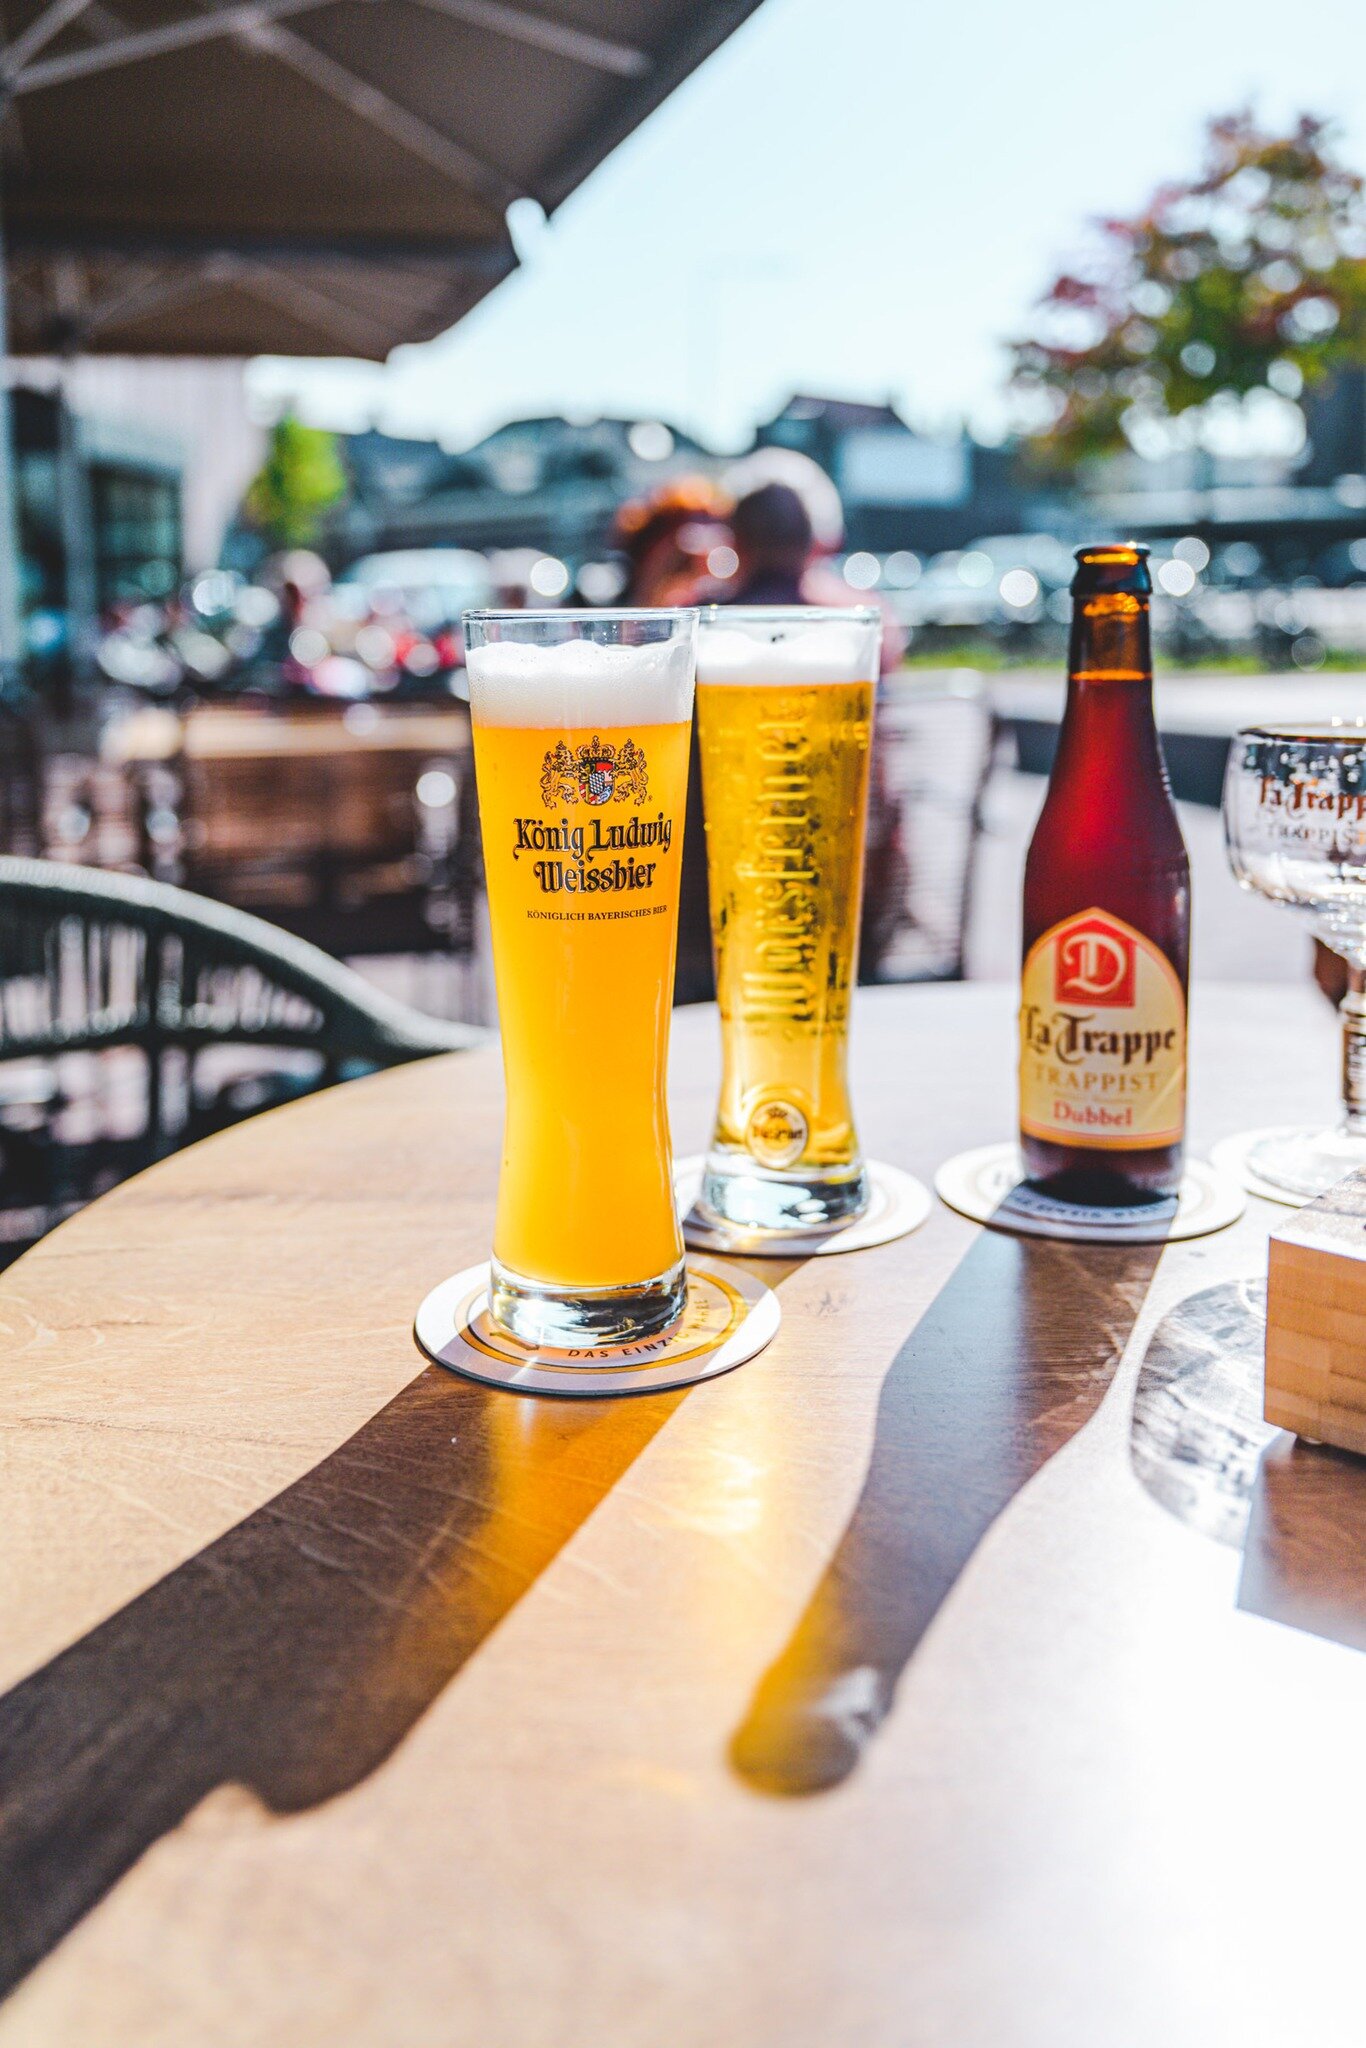 𝚂𝚞𝚗'𝚜 𝚘𝚞𝚝! ☀️
Kom vandaag genieten op ons terras van de eerste warme zonnestralen met een lekker koud biertje (iets anders mag uiteraard ook 😀). We zijn vanaf 11:00 uur geopend. We zien je wel verschijnen! 

𝚁𝚎𝚜𝚎𝚛𝚟𝚎𝚛𝚎𝚗:
💻 www.resta